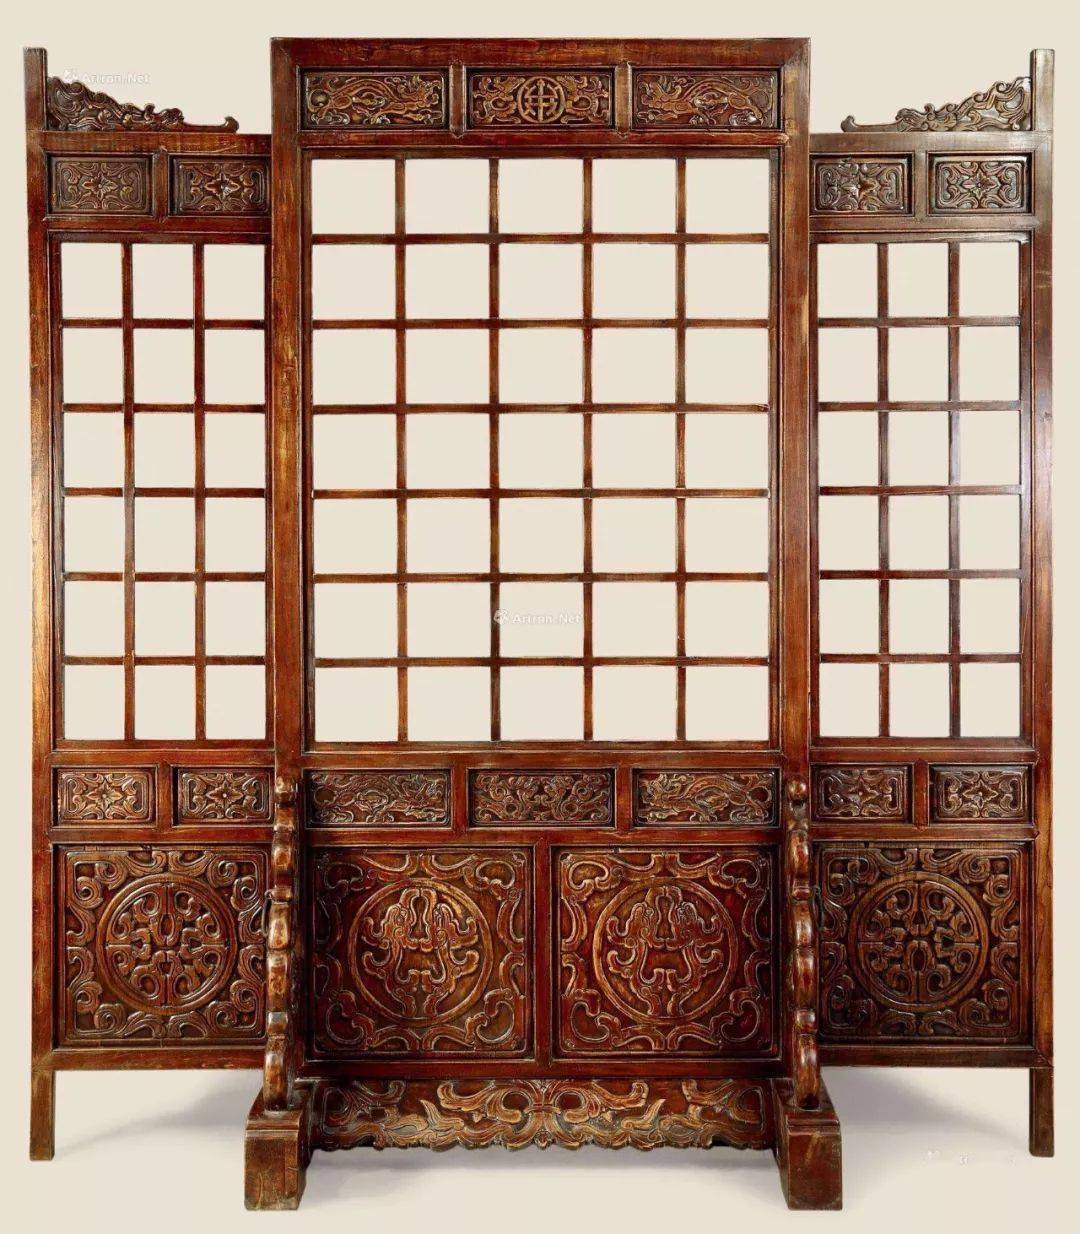 中国古代家具图片图片